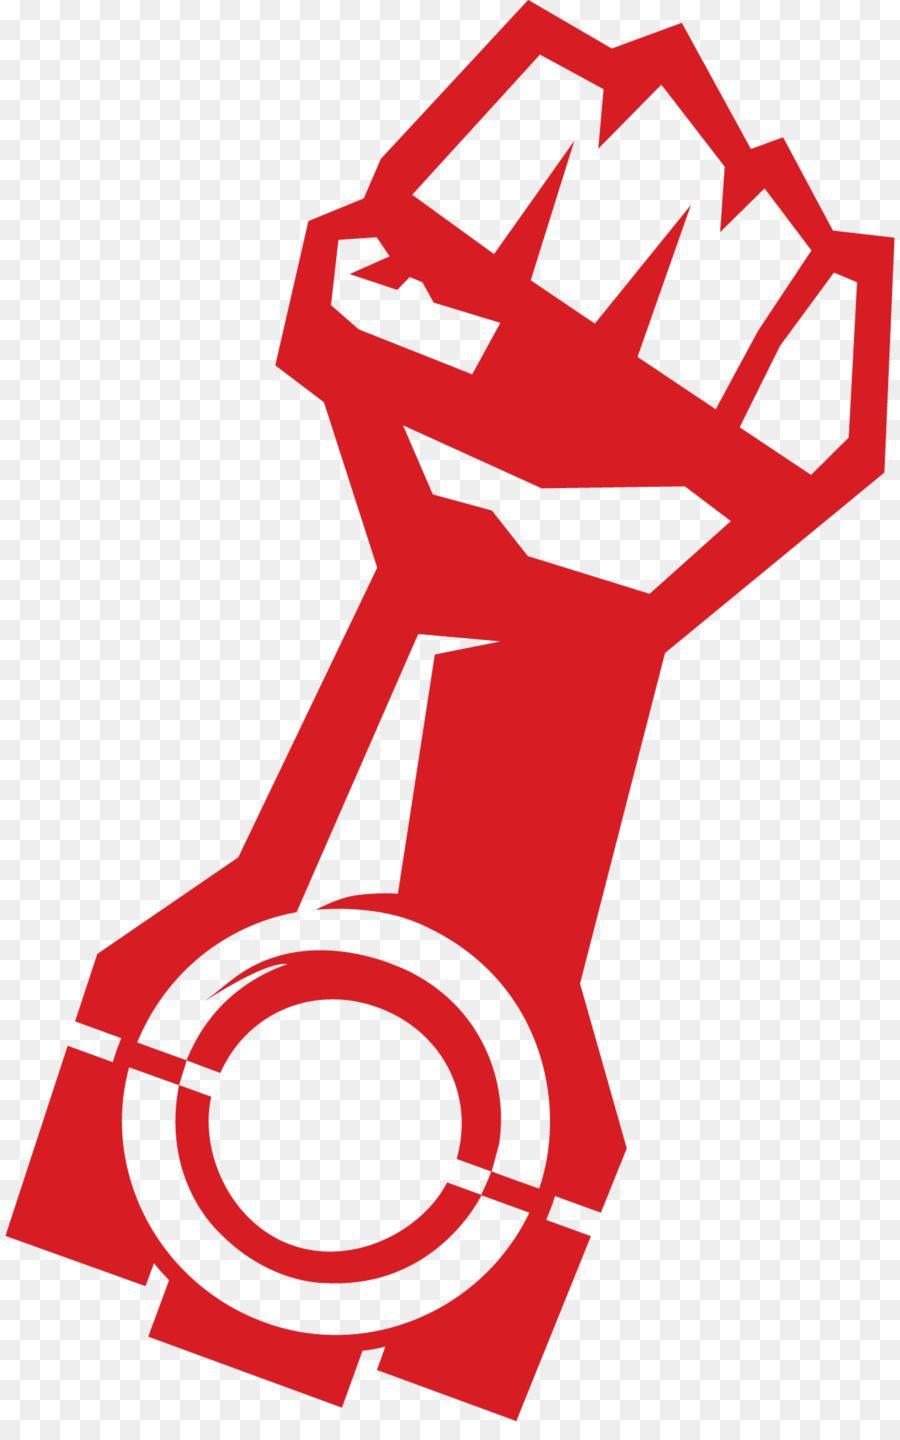 Motor Logo - Decal Raised fist Sticker Logo - motor logo png download - 1368*2160 ...